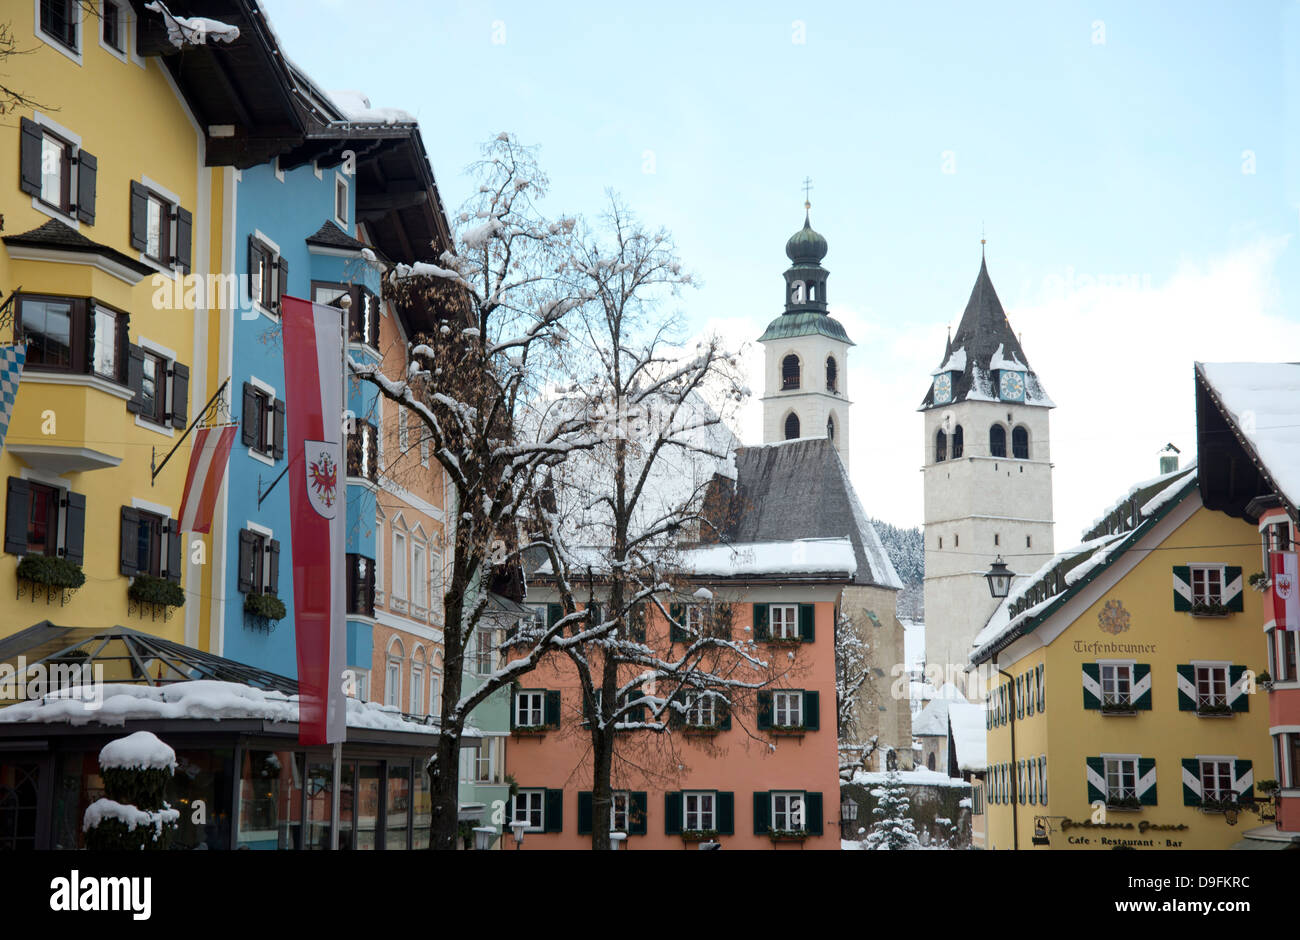 La principale rue commerçante de la station de ski de Kitzbuhel, Autriche Banque D'Images